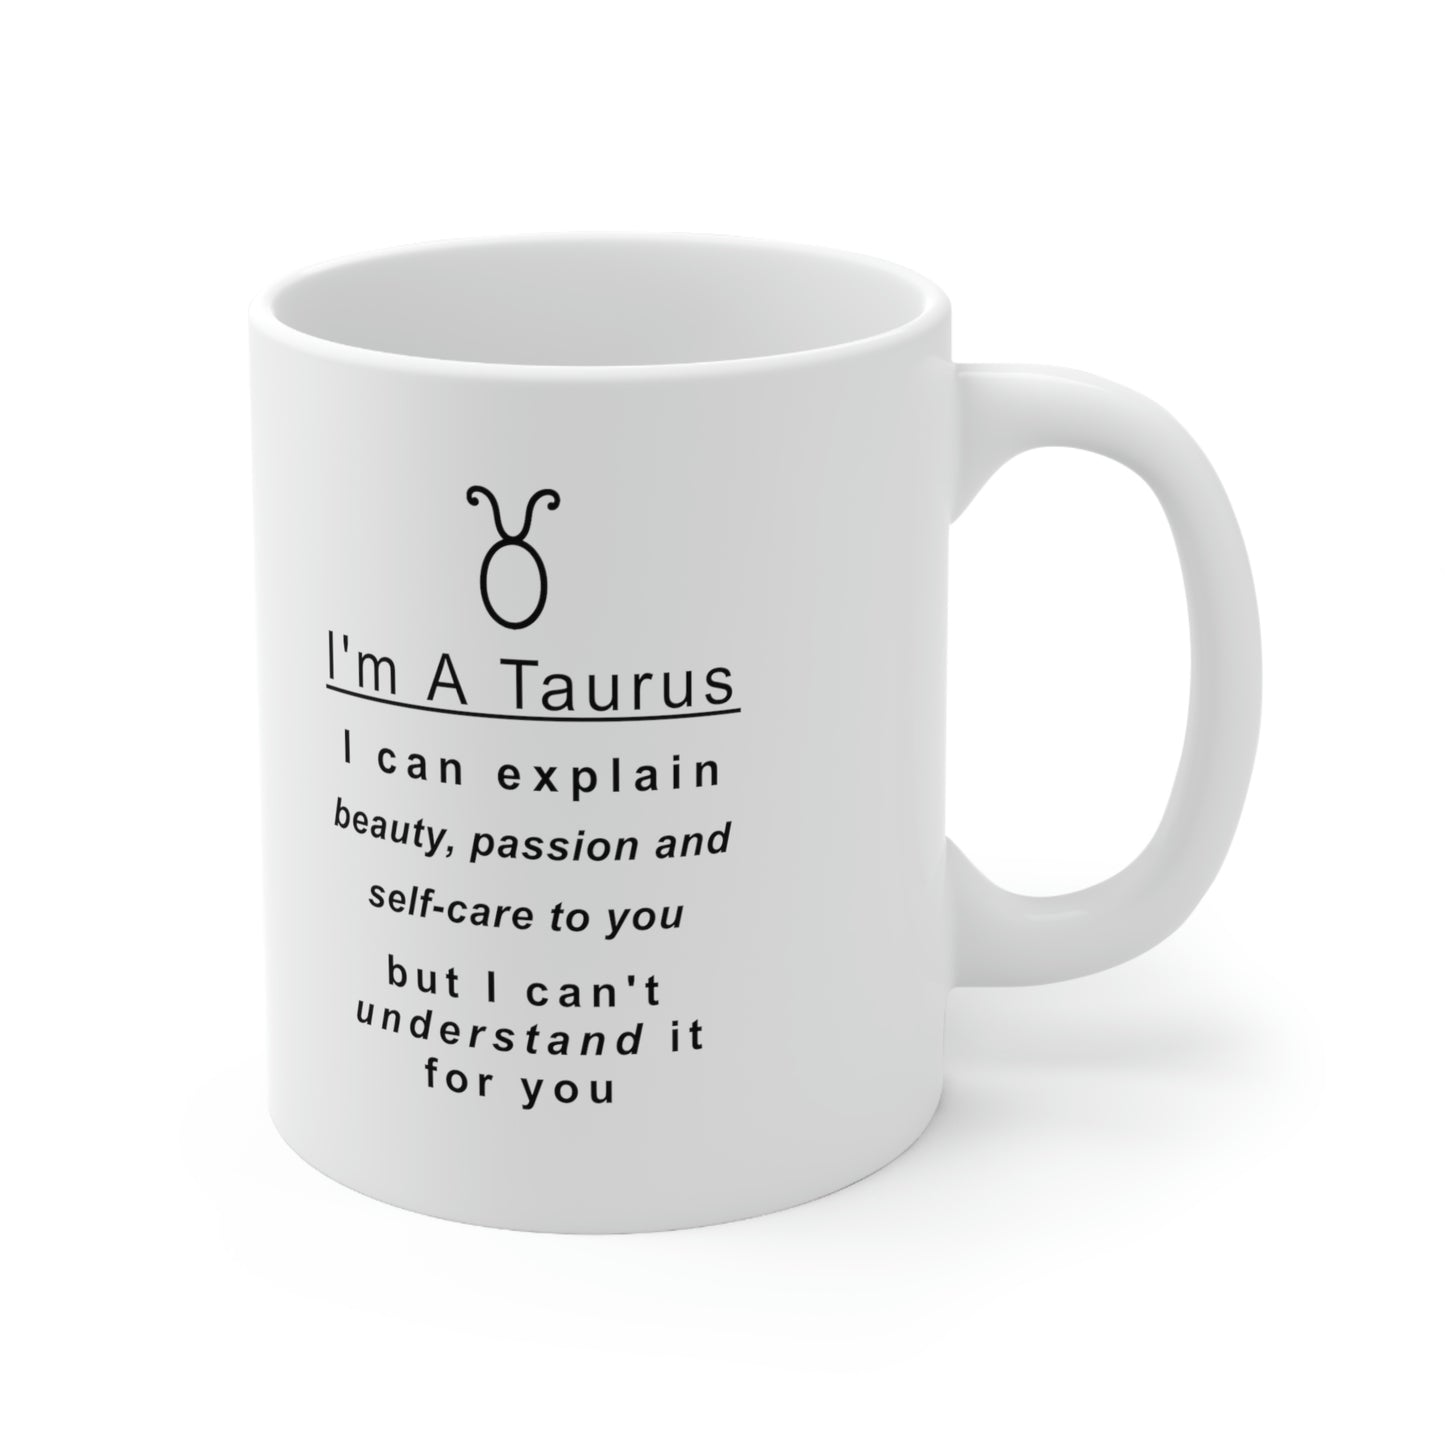 Taurus Mug: "Things A Taurus Can Explain" - full text in description